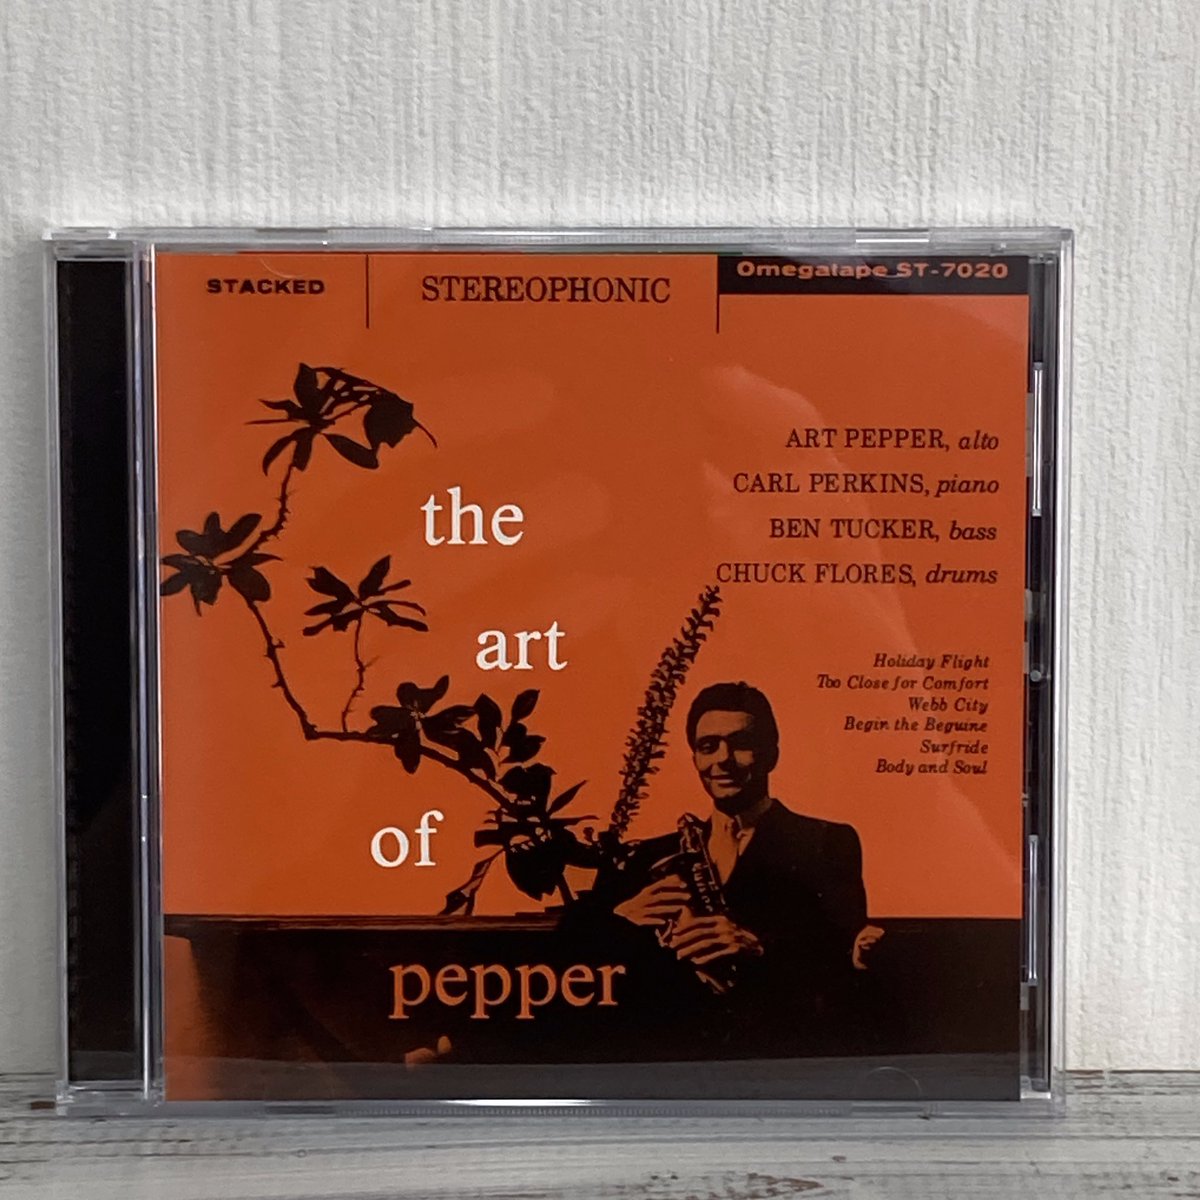 夕方からジャズ友さんがCD持参で遊びに。 今日はジャズ好きさん多い一日ですね😊 なうぷれは The Art of Pepper / Art Pepper